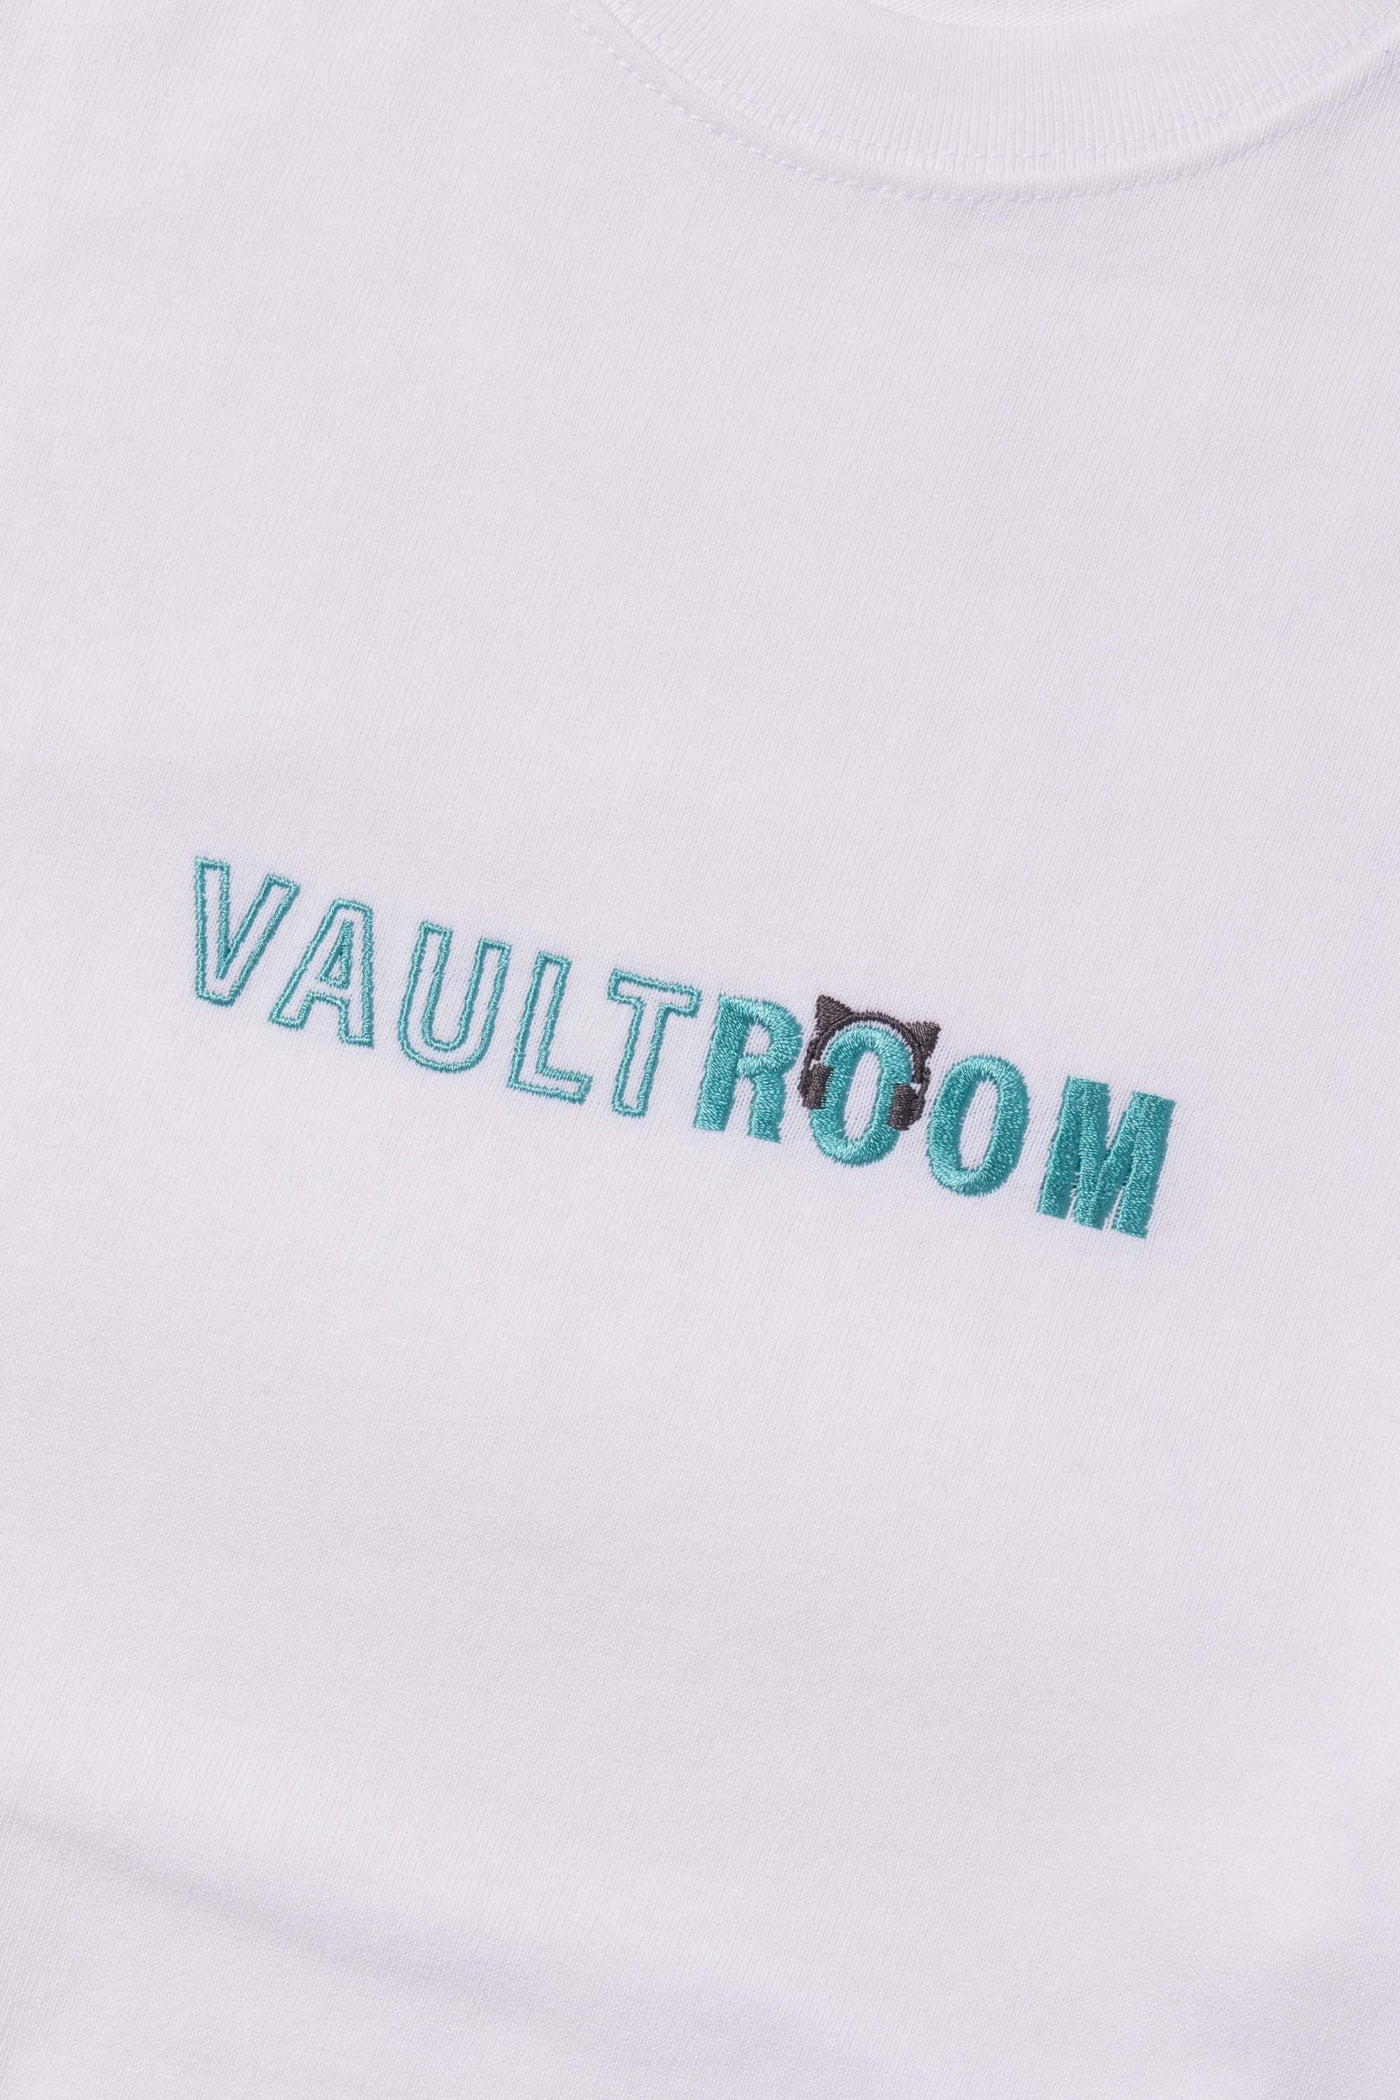 新着商品 猫麦とろろ×vaultroom vaultroom Tシャツ ホワイトXL トップス